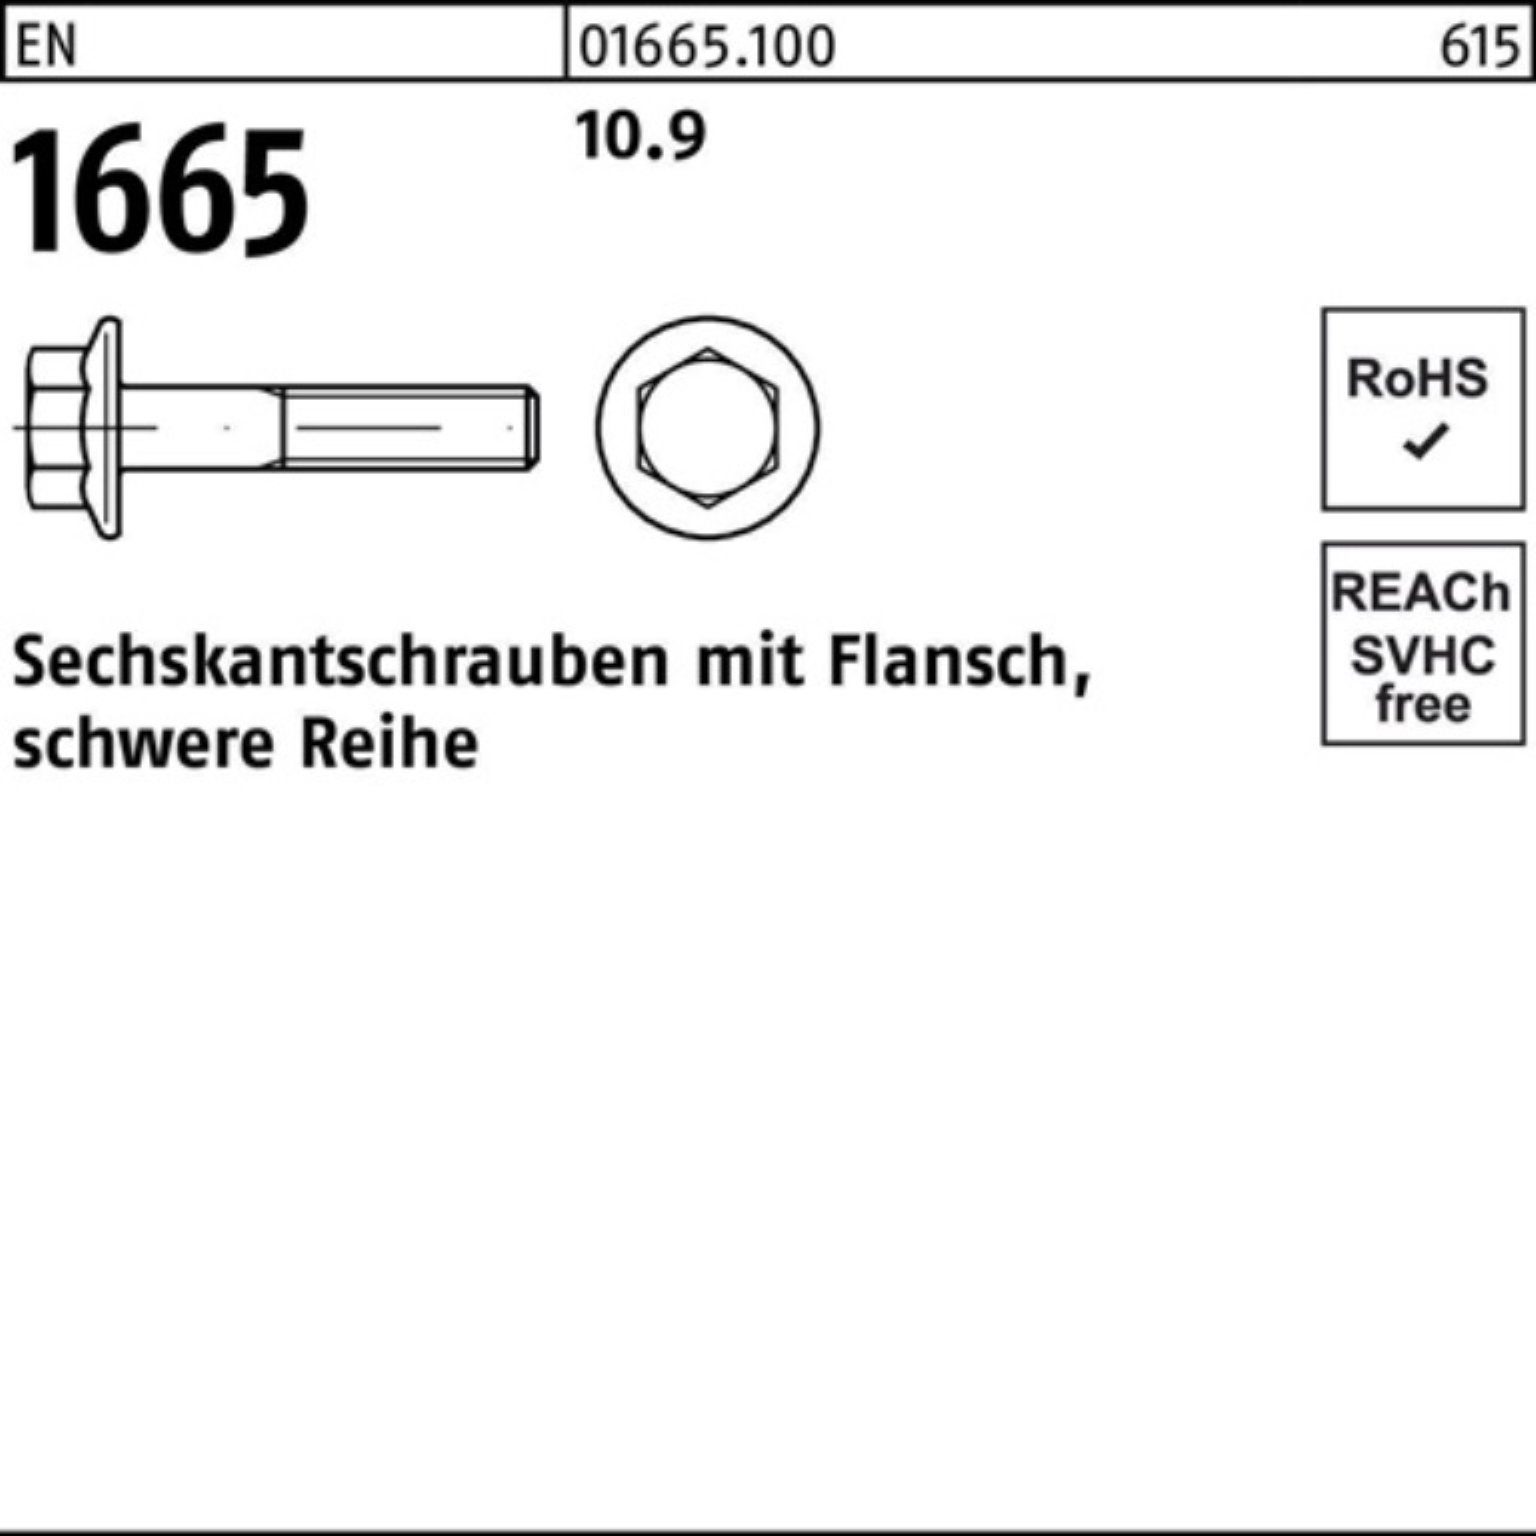 Reyher Sechskantschraube 16 1665 EN Sechskantschraube M6x Pack 10.9 500 500er Stück EN Flansch